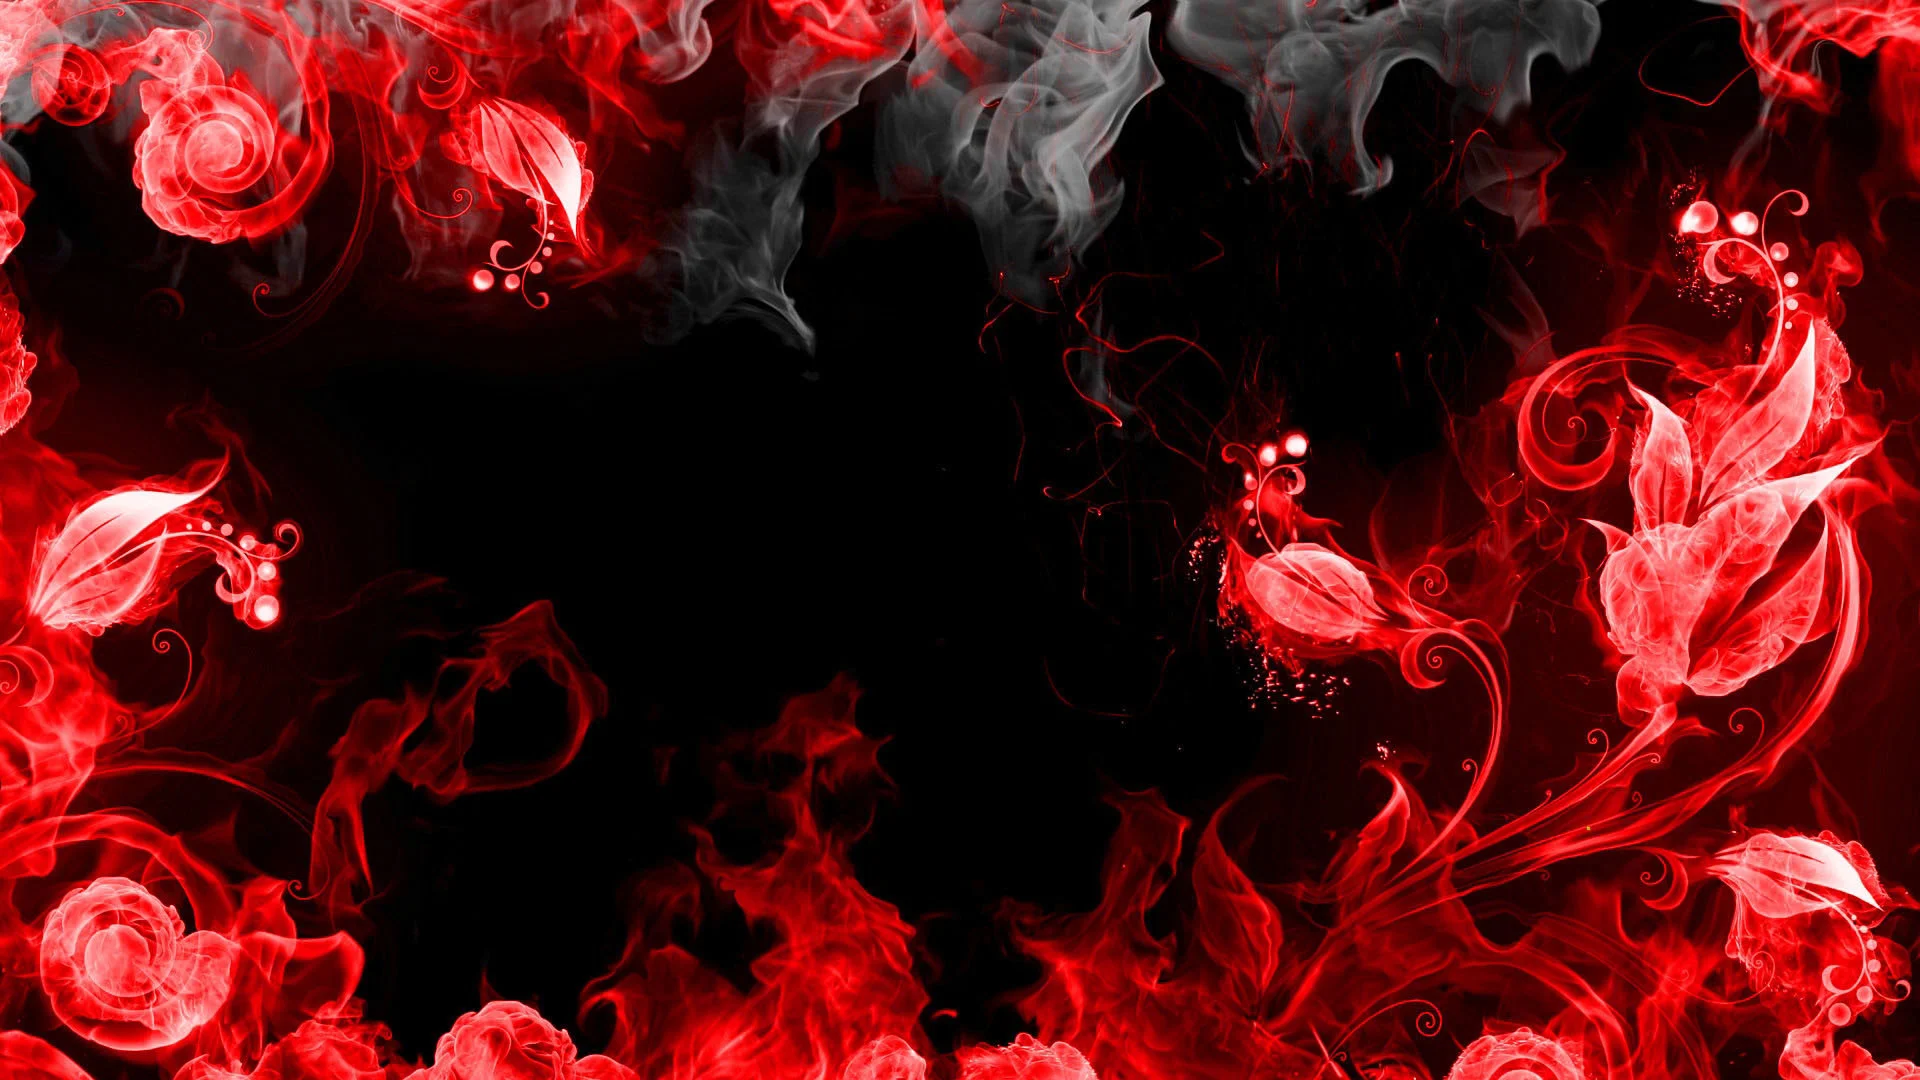 Những hình ảnh với nền đen đỏ sắc sảo sẽ thu hút bạn bởi sự táo bạo và cá tính của chúng.